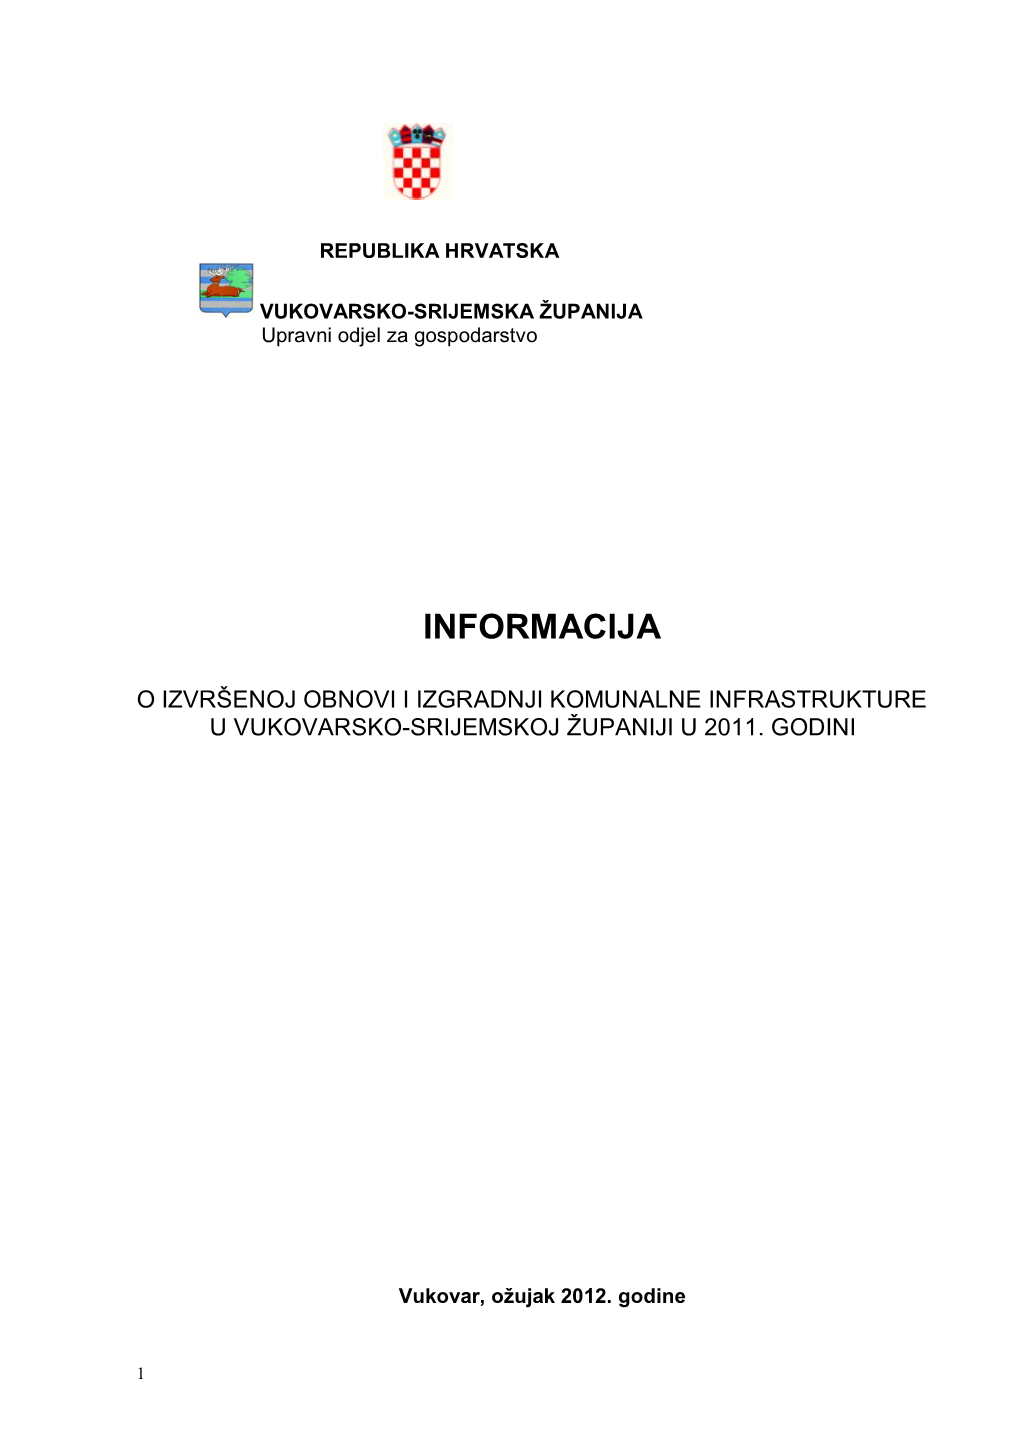 Informacija O Infrastrukturi 2011